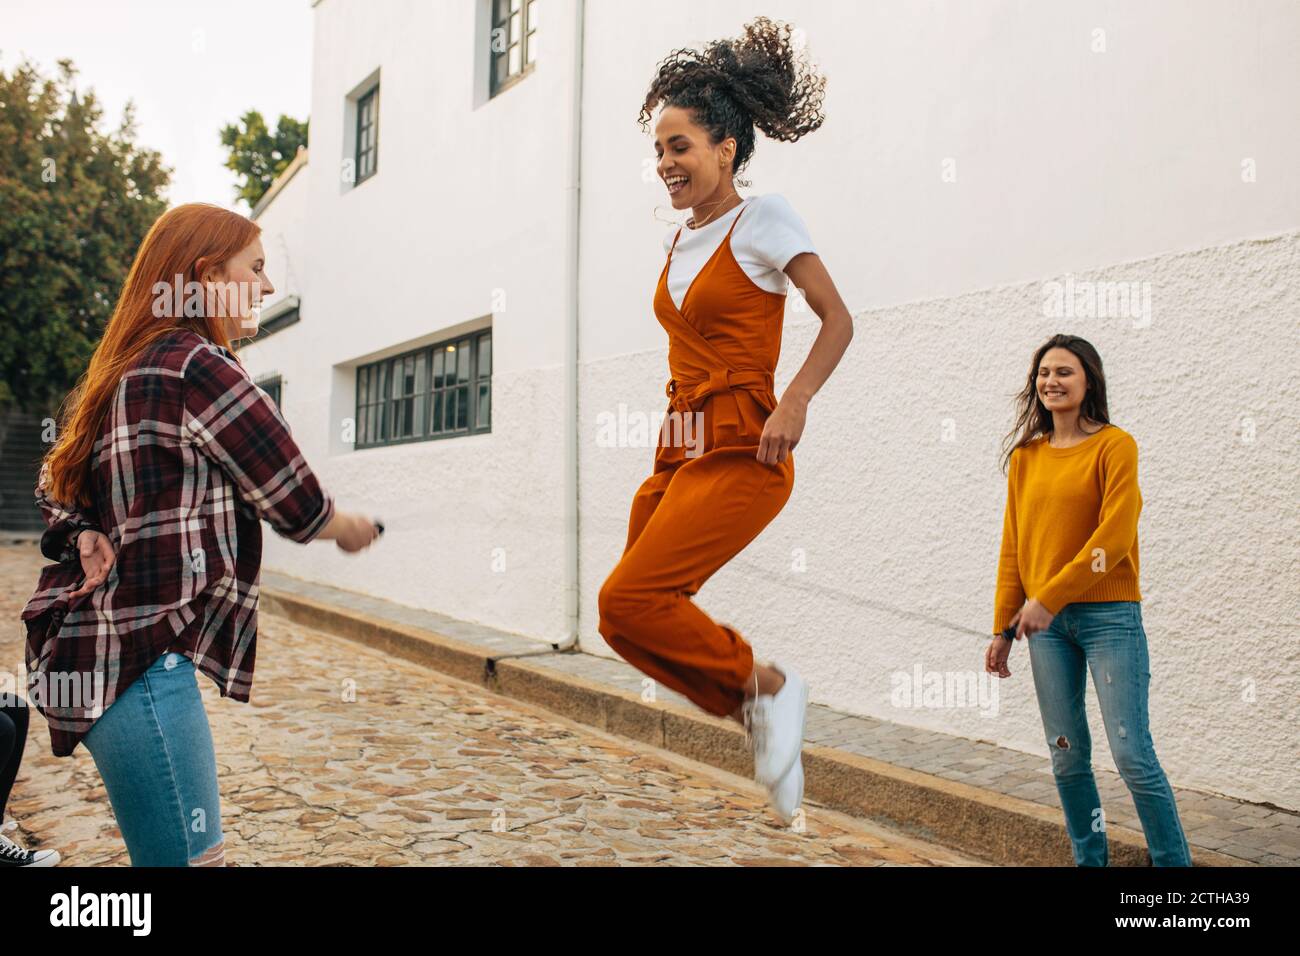 Zwei Frauen halten Springseil mit einem Freund springen. Gruppe von Freundinnen springen Seil zusammen. Stockfoto